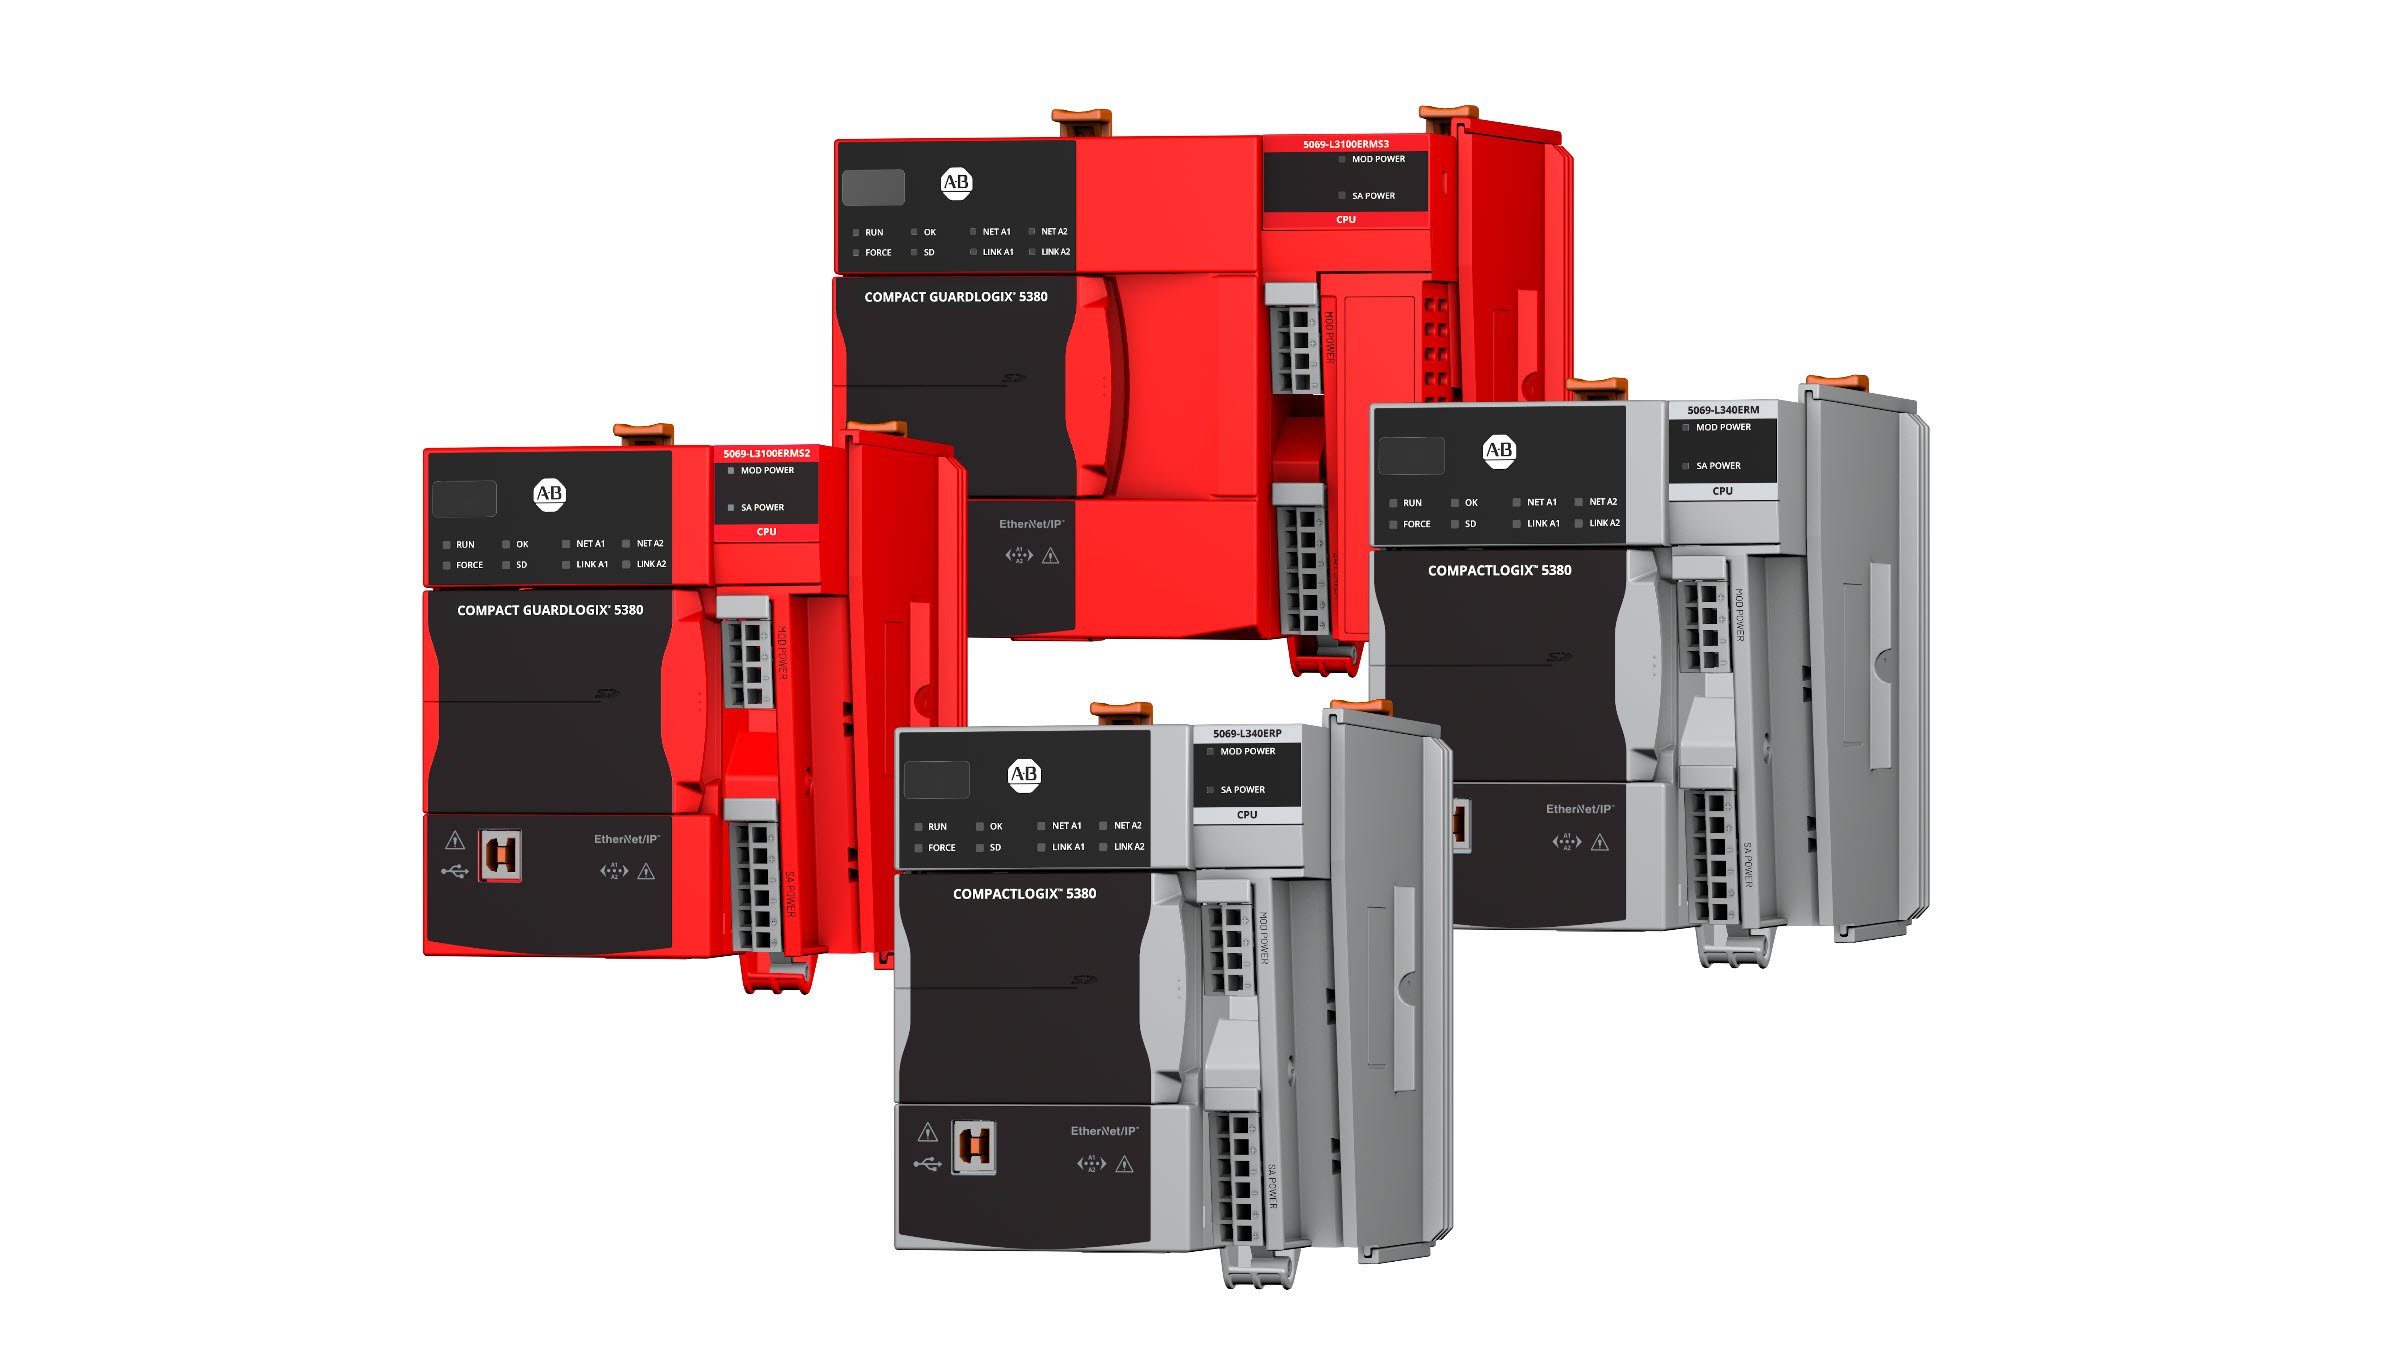 Un collage con los controladores Compact GuardLogix 5380 y CompactLogix 5380 Catálogos 5069-L3100ERMS3, 5069-L3100ERMS2, 5069-L340ERM y 5069-L340ERP.